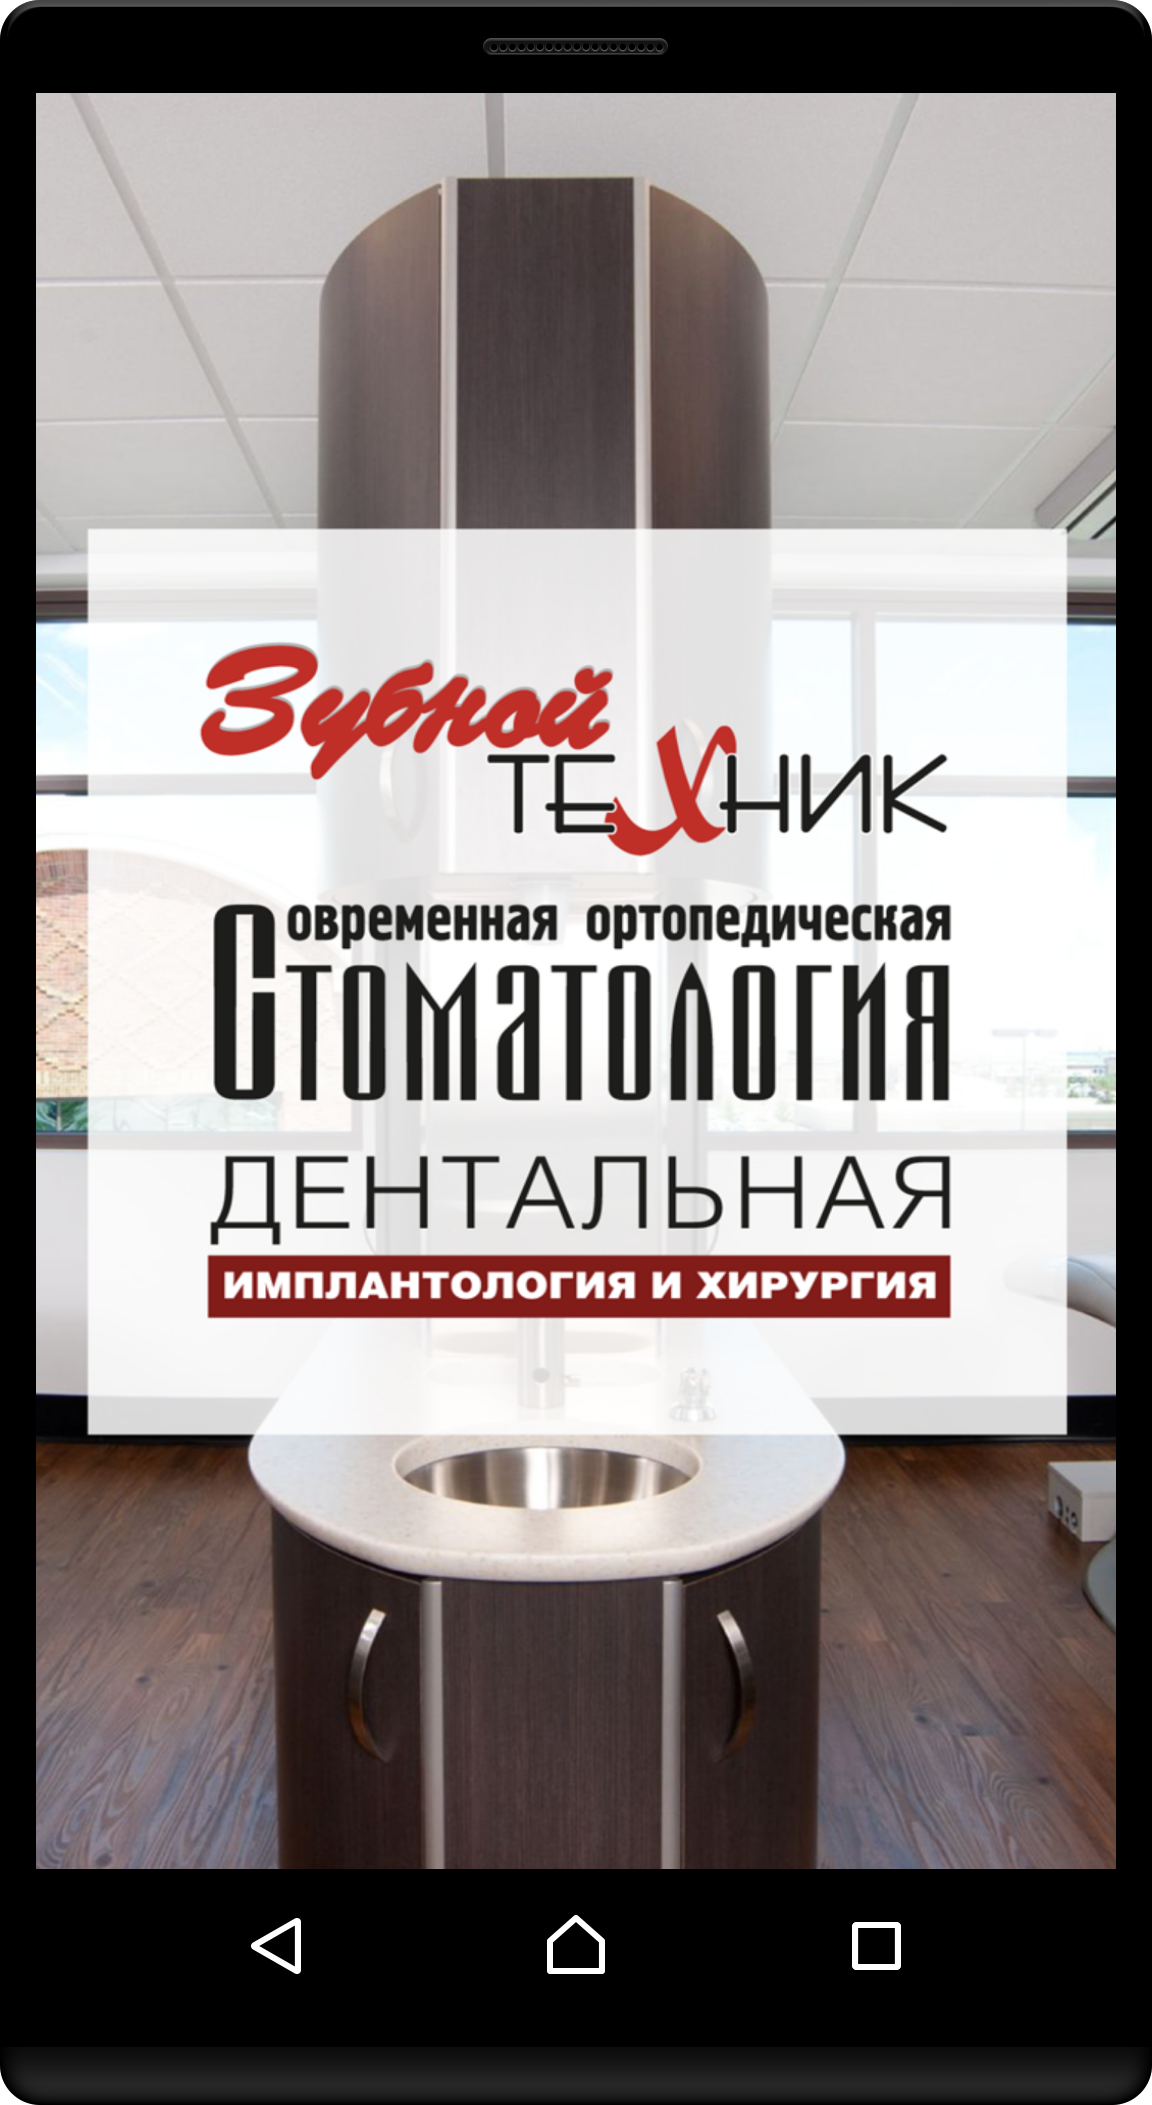 Android application Издательство "Зубной Техник" screenshort